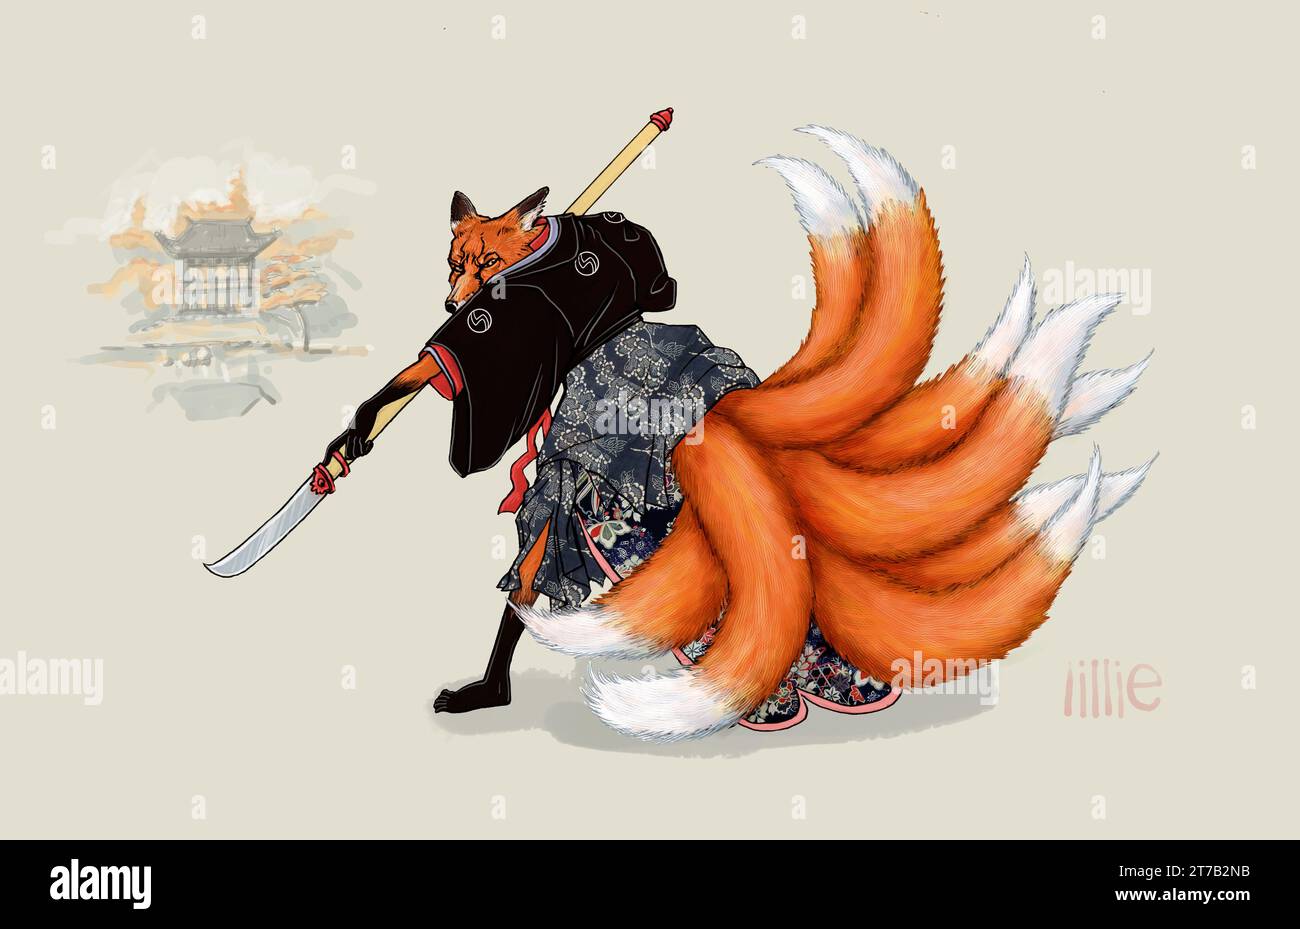 Art dans le folklore japonais, les kitsune (狐, きつね?) sont neuf esprits de renard à queue qui possèdent des capacités paranormales qui peuvent se transformer en formes humaines ou autres Banque D'Images